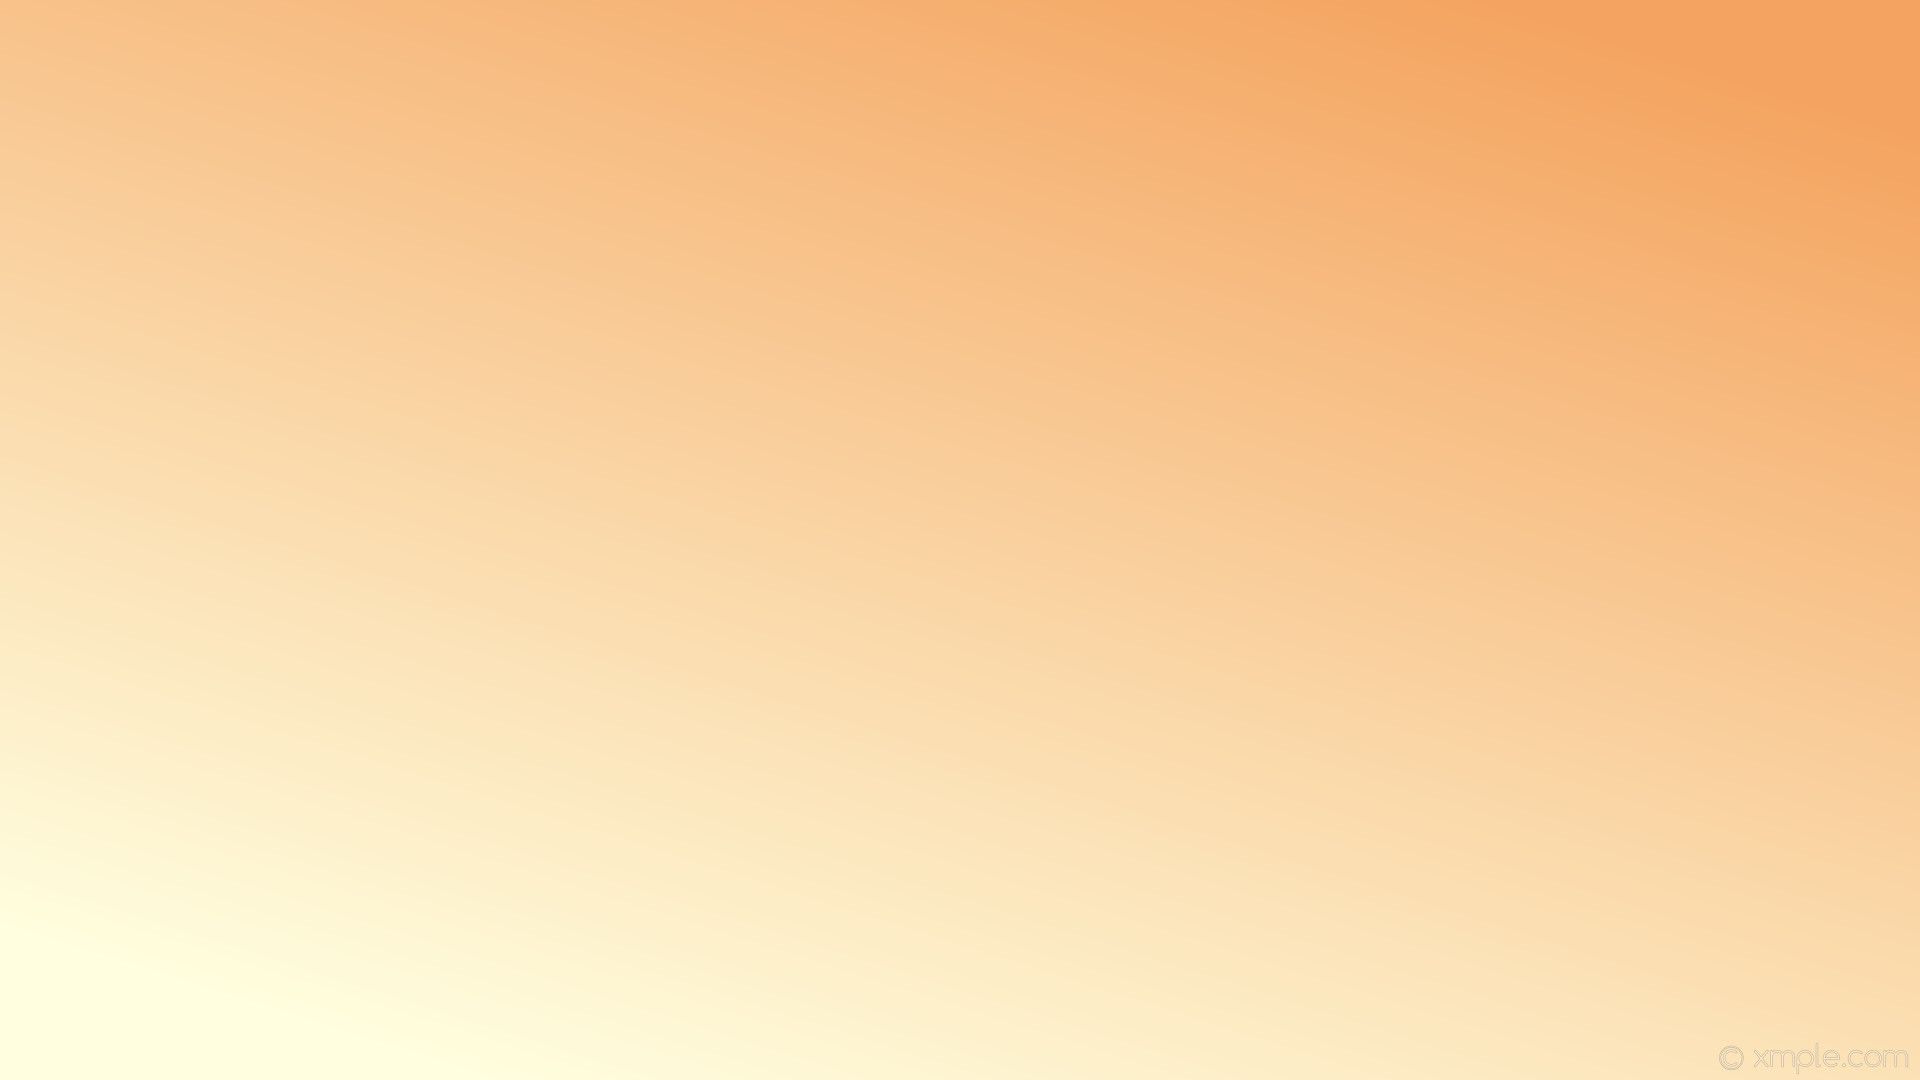 Orange Tan and Brown Wallpapers on WallpaperDog